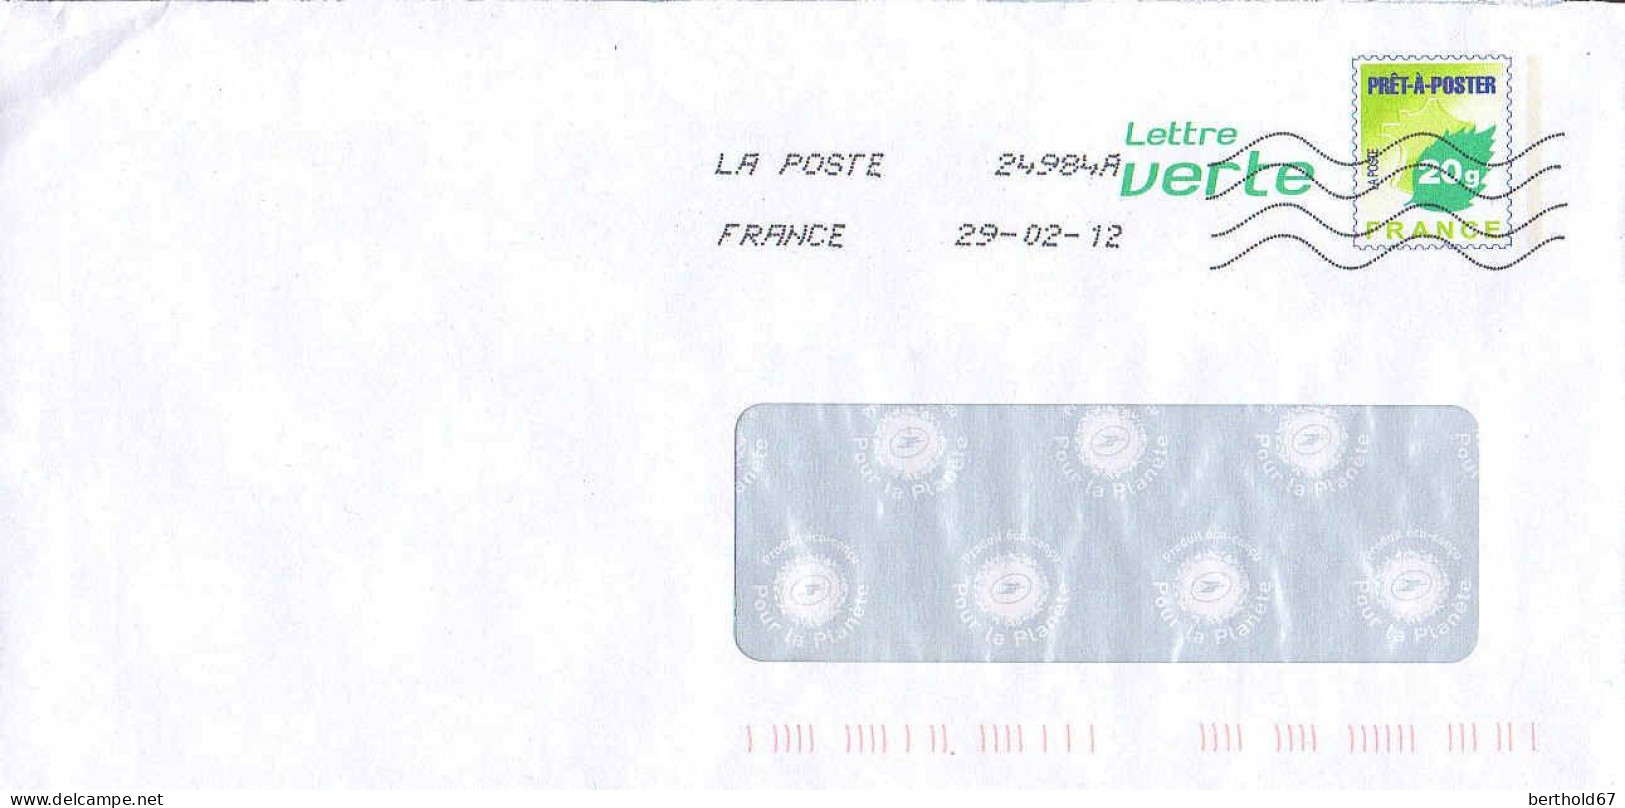 France Entier-P Obl (5060) Feuille De Chêne Lettre Verte 20g (Lign.Ondulées & Code ROC) 24984A 29-02-12 11U159 - Prêts-à-poster:  Autres (1995-...)